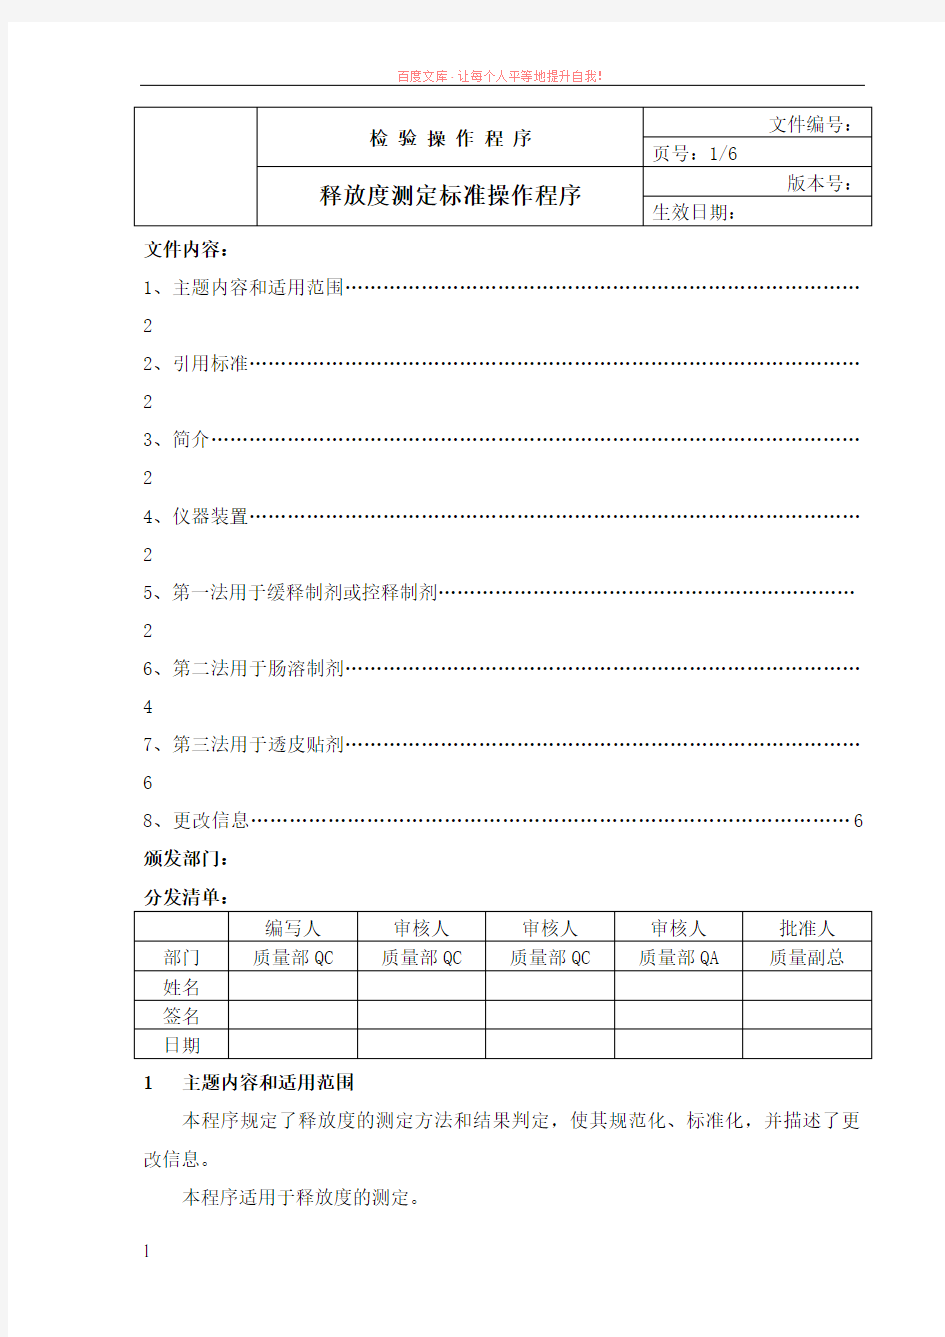 中国药品检验标准操作规范2019版释放度检查法 (1)